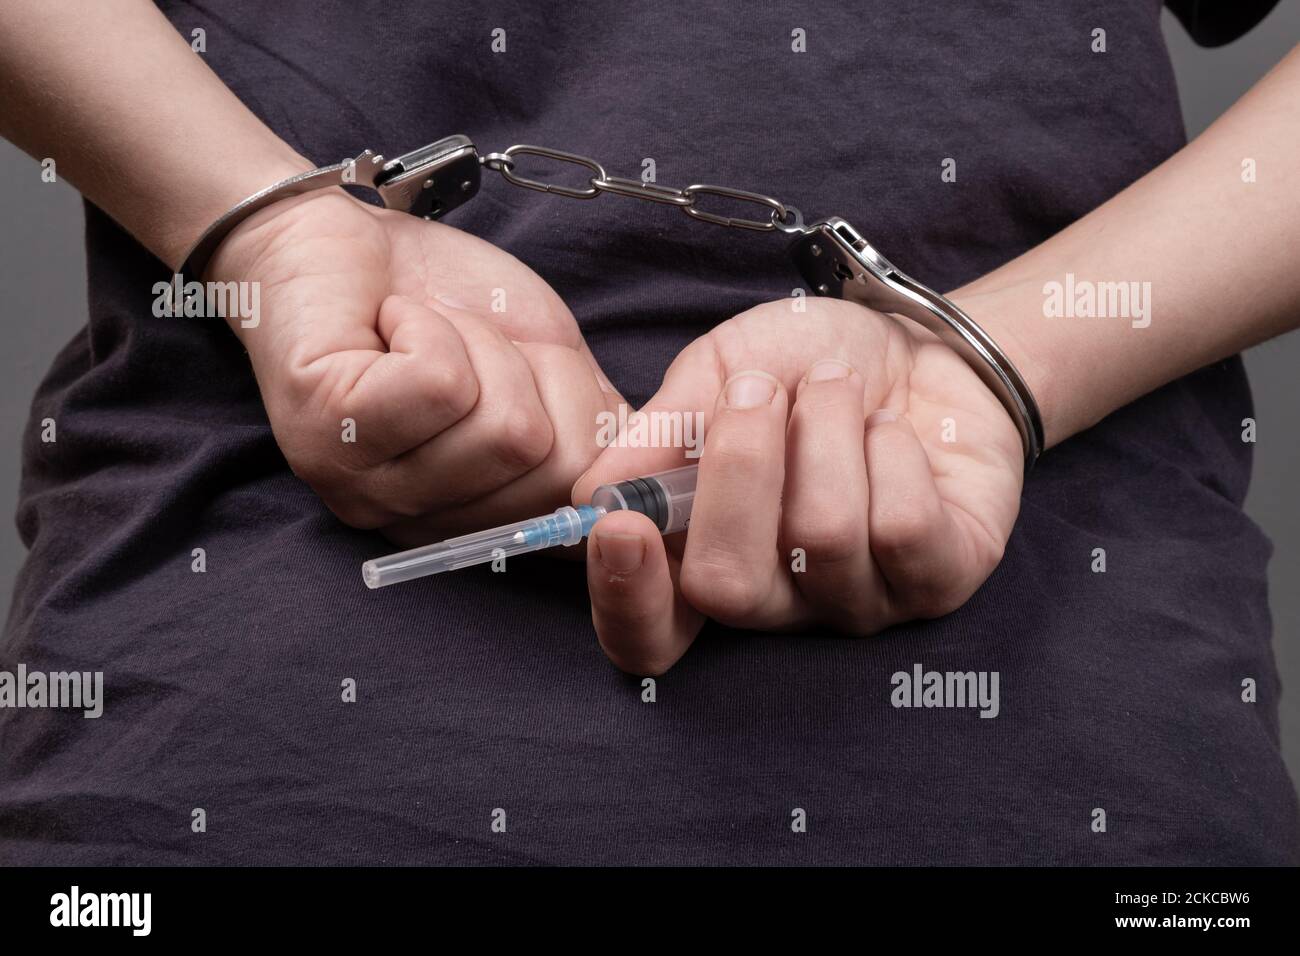 trafic de drogue, un homme aux menottes avec une seringue. Banque D'Images